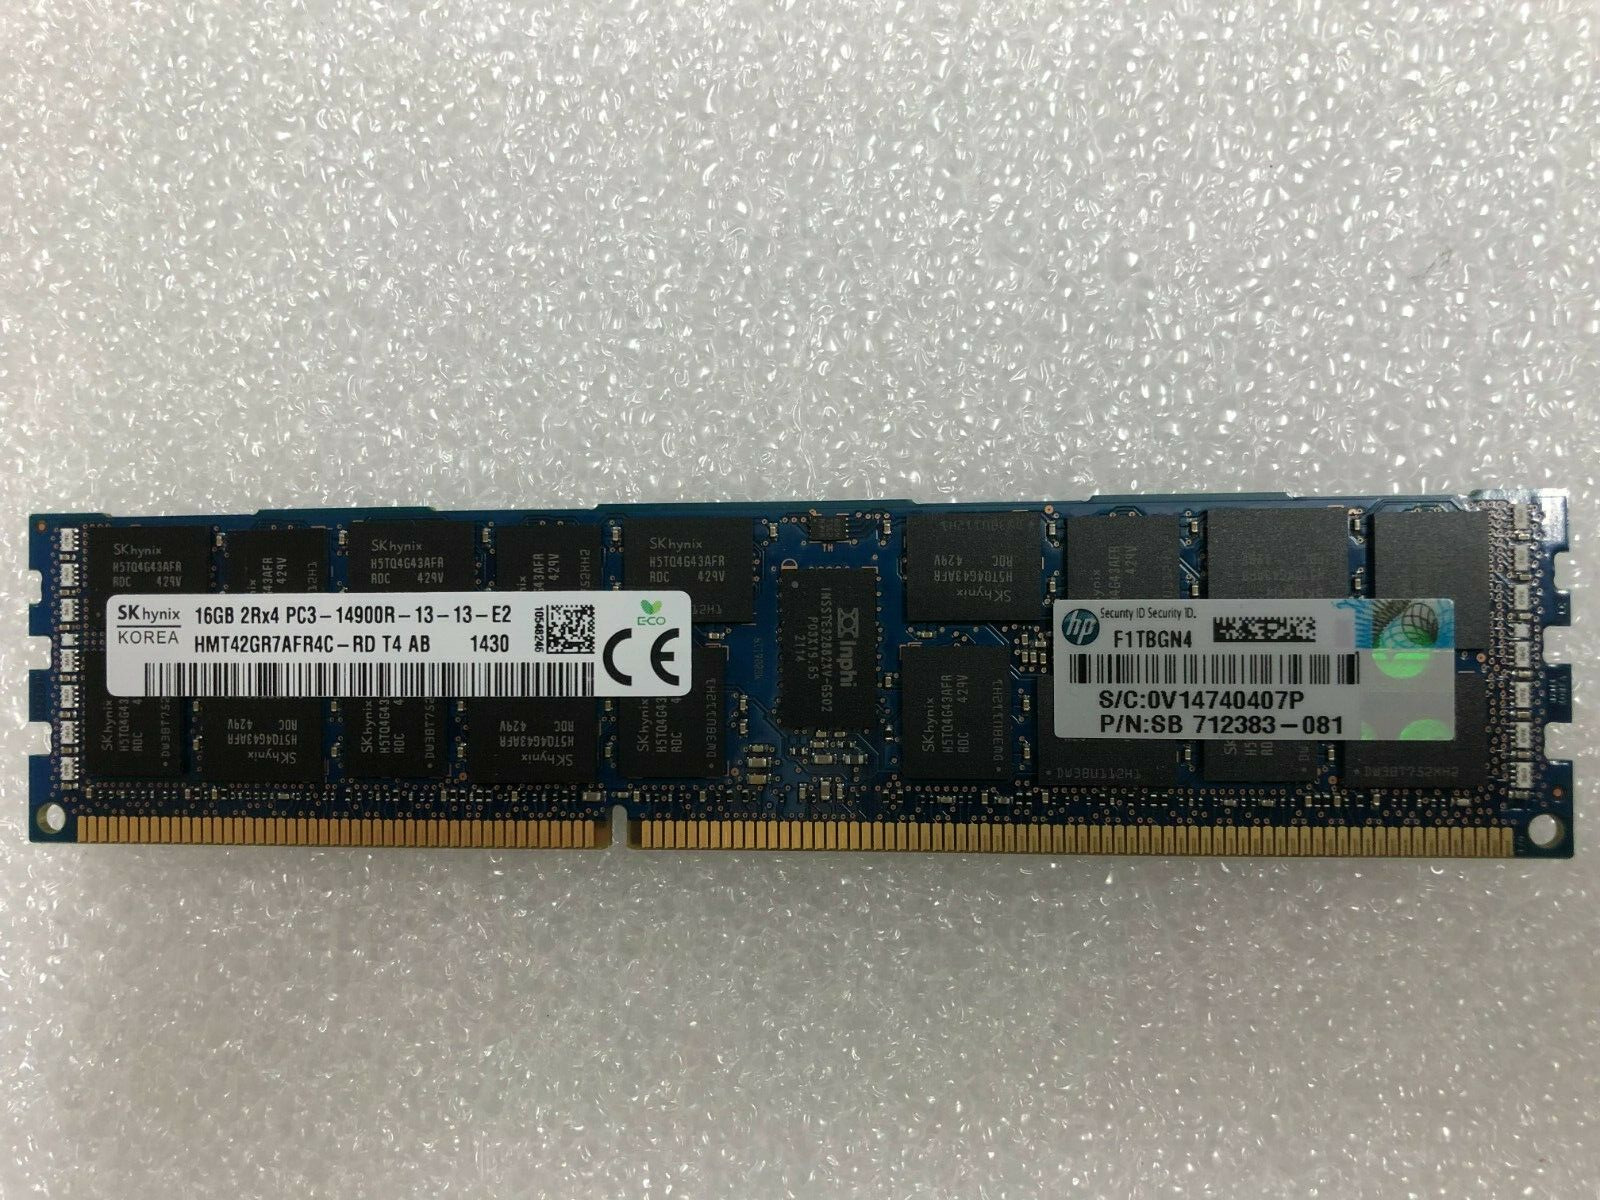 SK Hynix 16GB (1 x 16GB) HMT42GR7AFR4C-RD PC3-14900R DDR3 ECC Server RAM